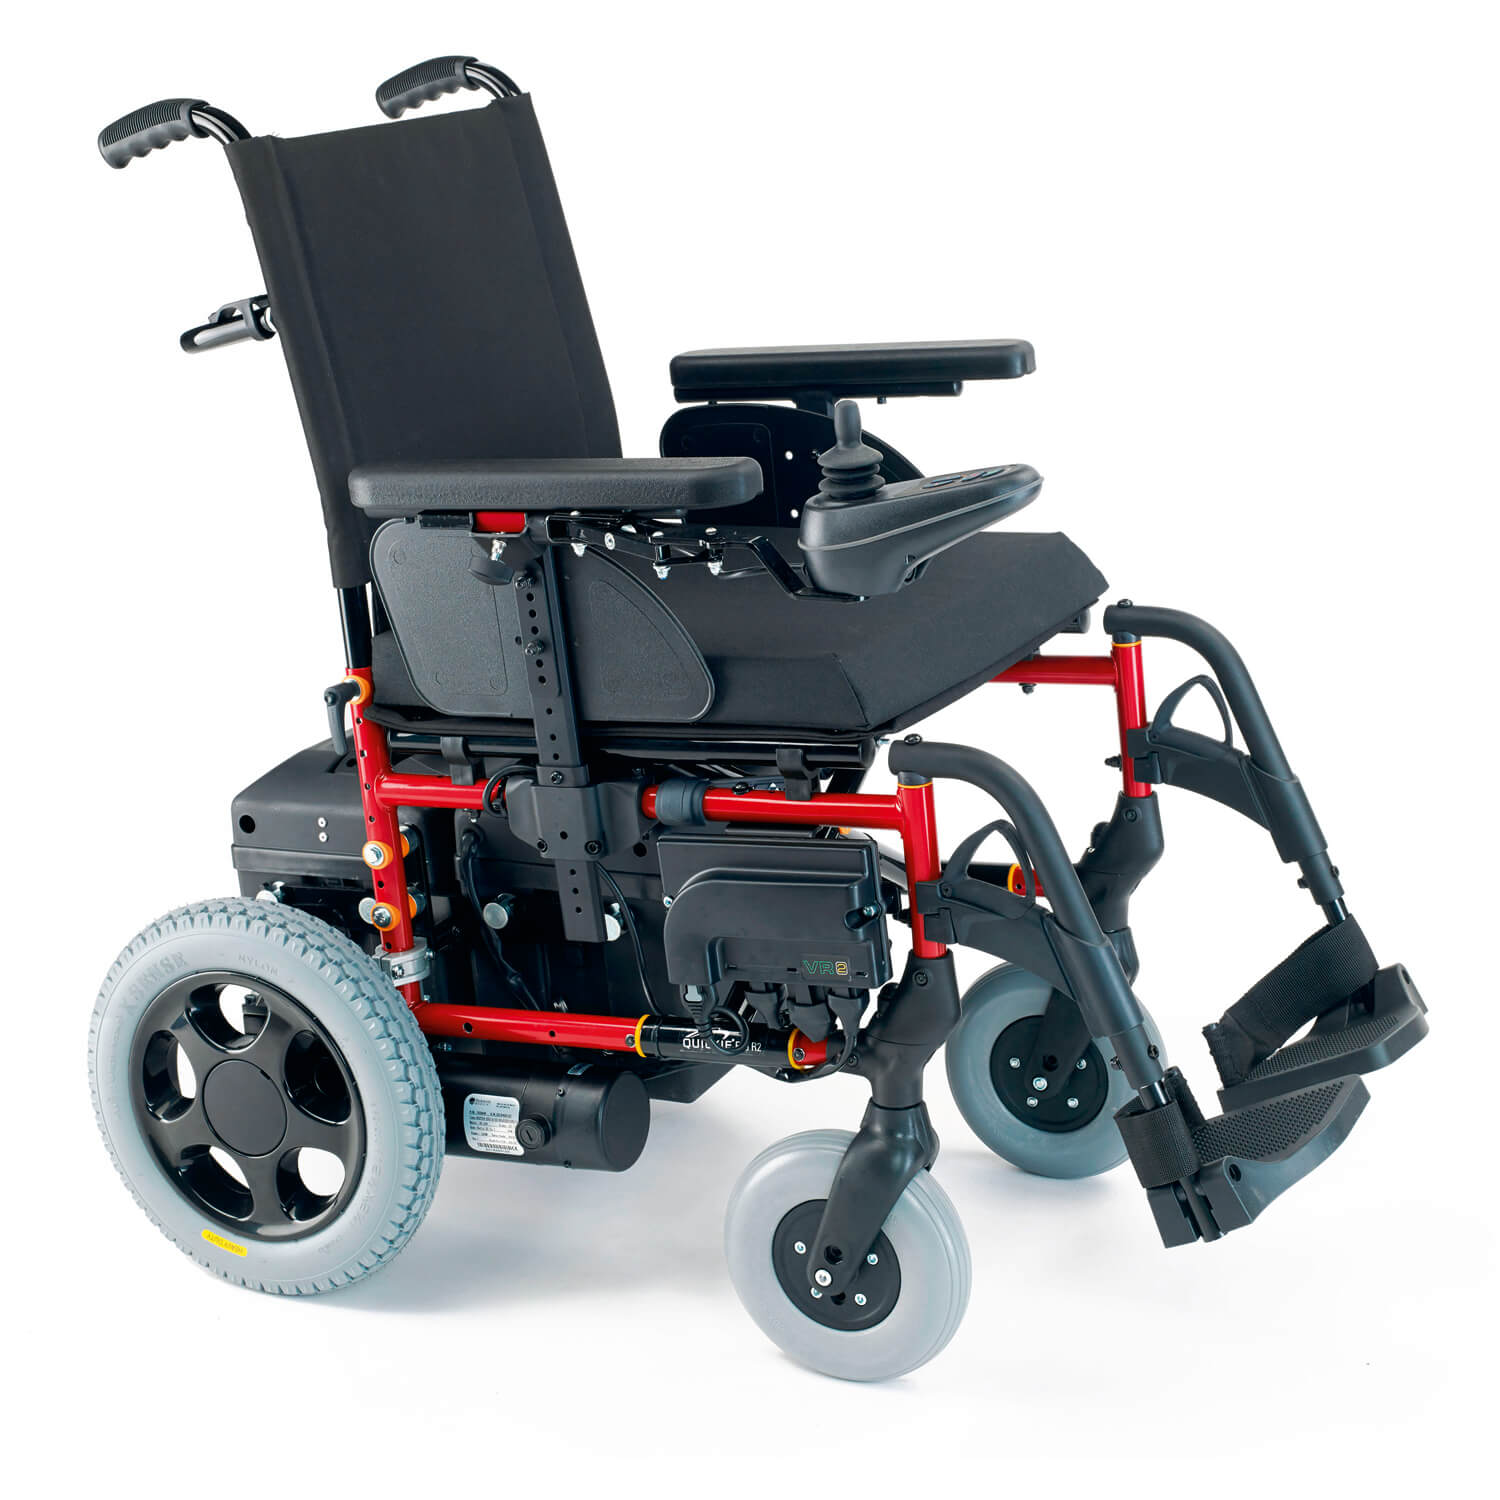 Коляски инвалидные с приводом цена. Ky123 кресло коляска с электроприводом. Инвалидная коляска с электроприводом ly-eb103-112. Инвалидная коляска Армед f35. Инвалидная коляска с электроприводом ky123.